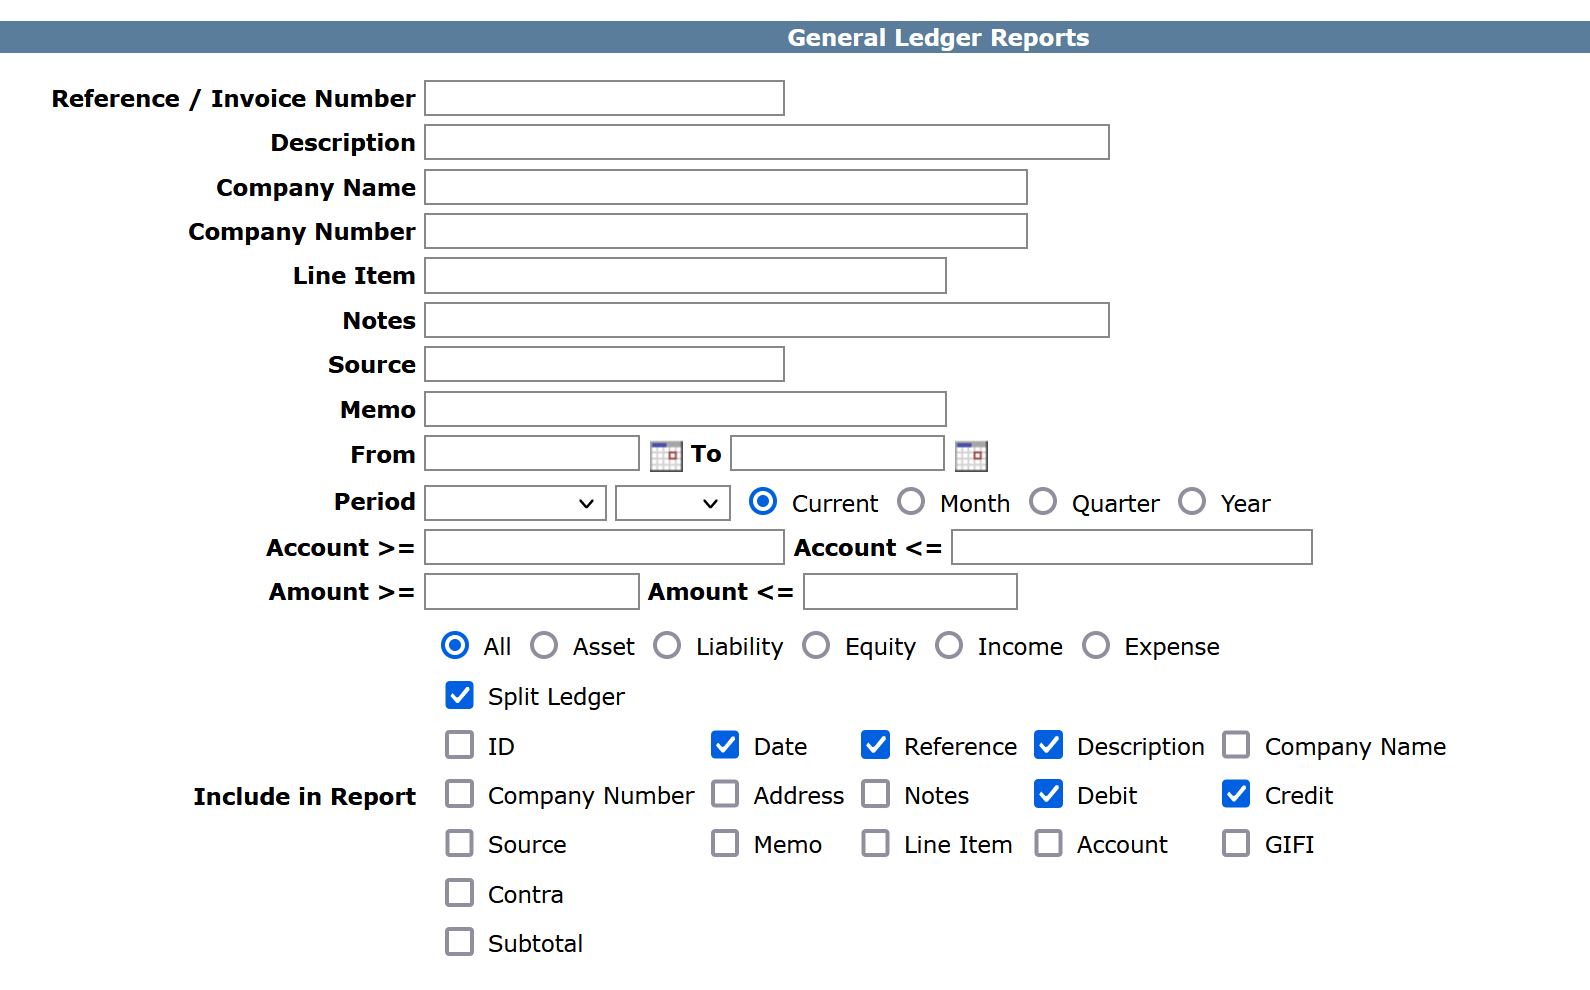 SQL-Ledger General Ledger Reports